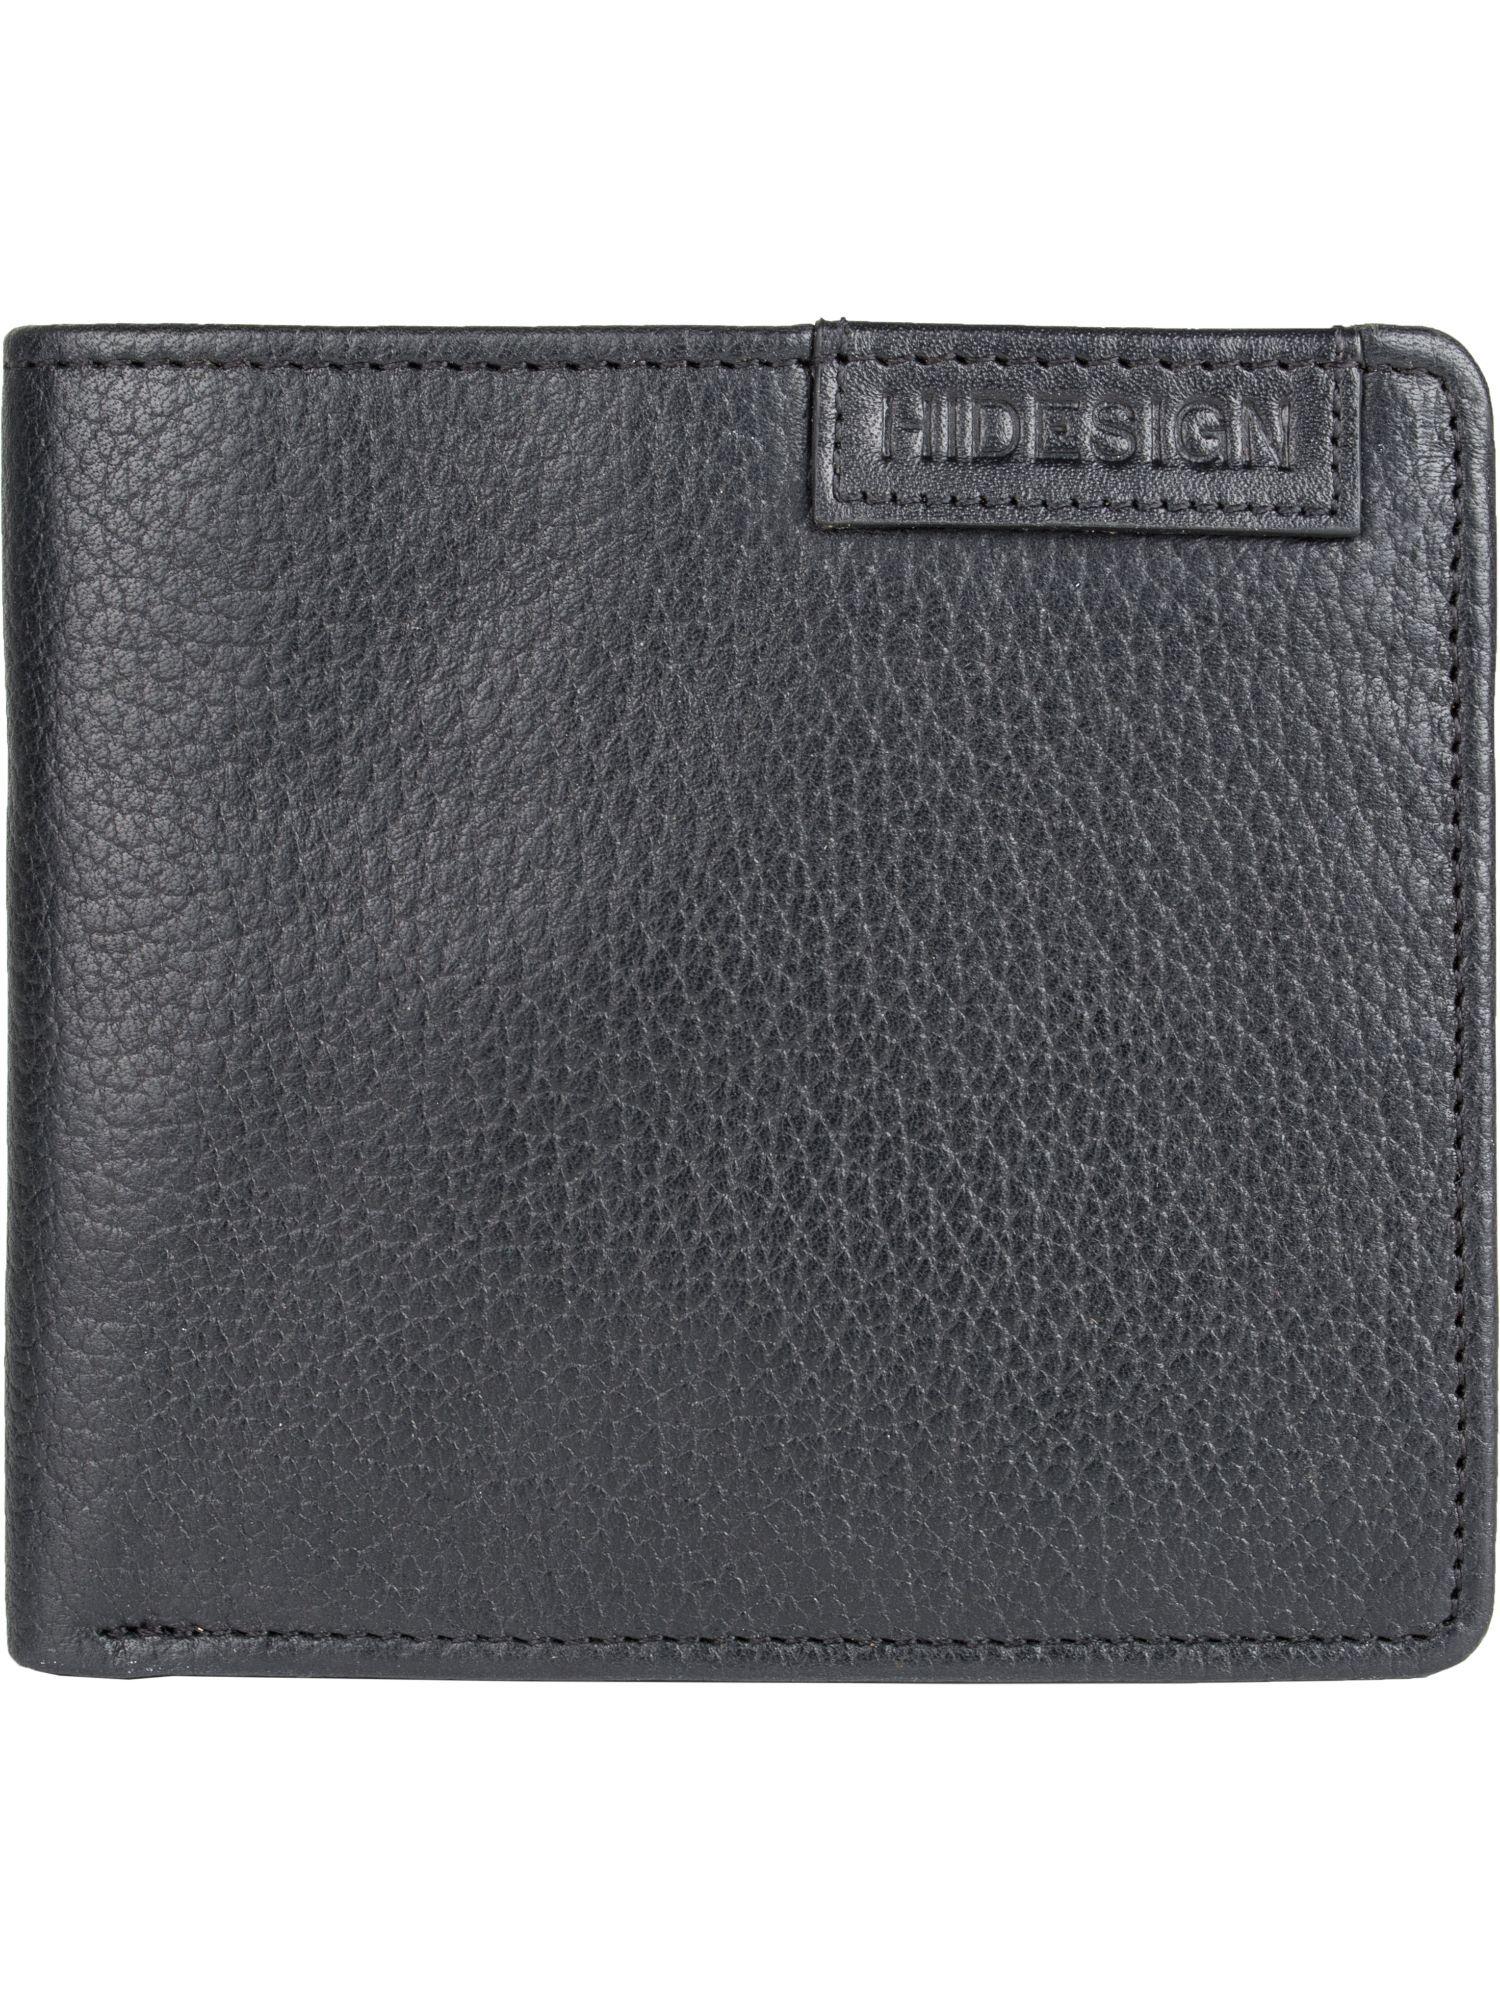 reg-prn-mel-ran--black-bi-fold-wallet